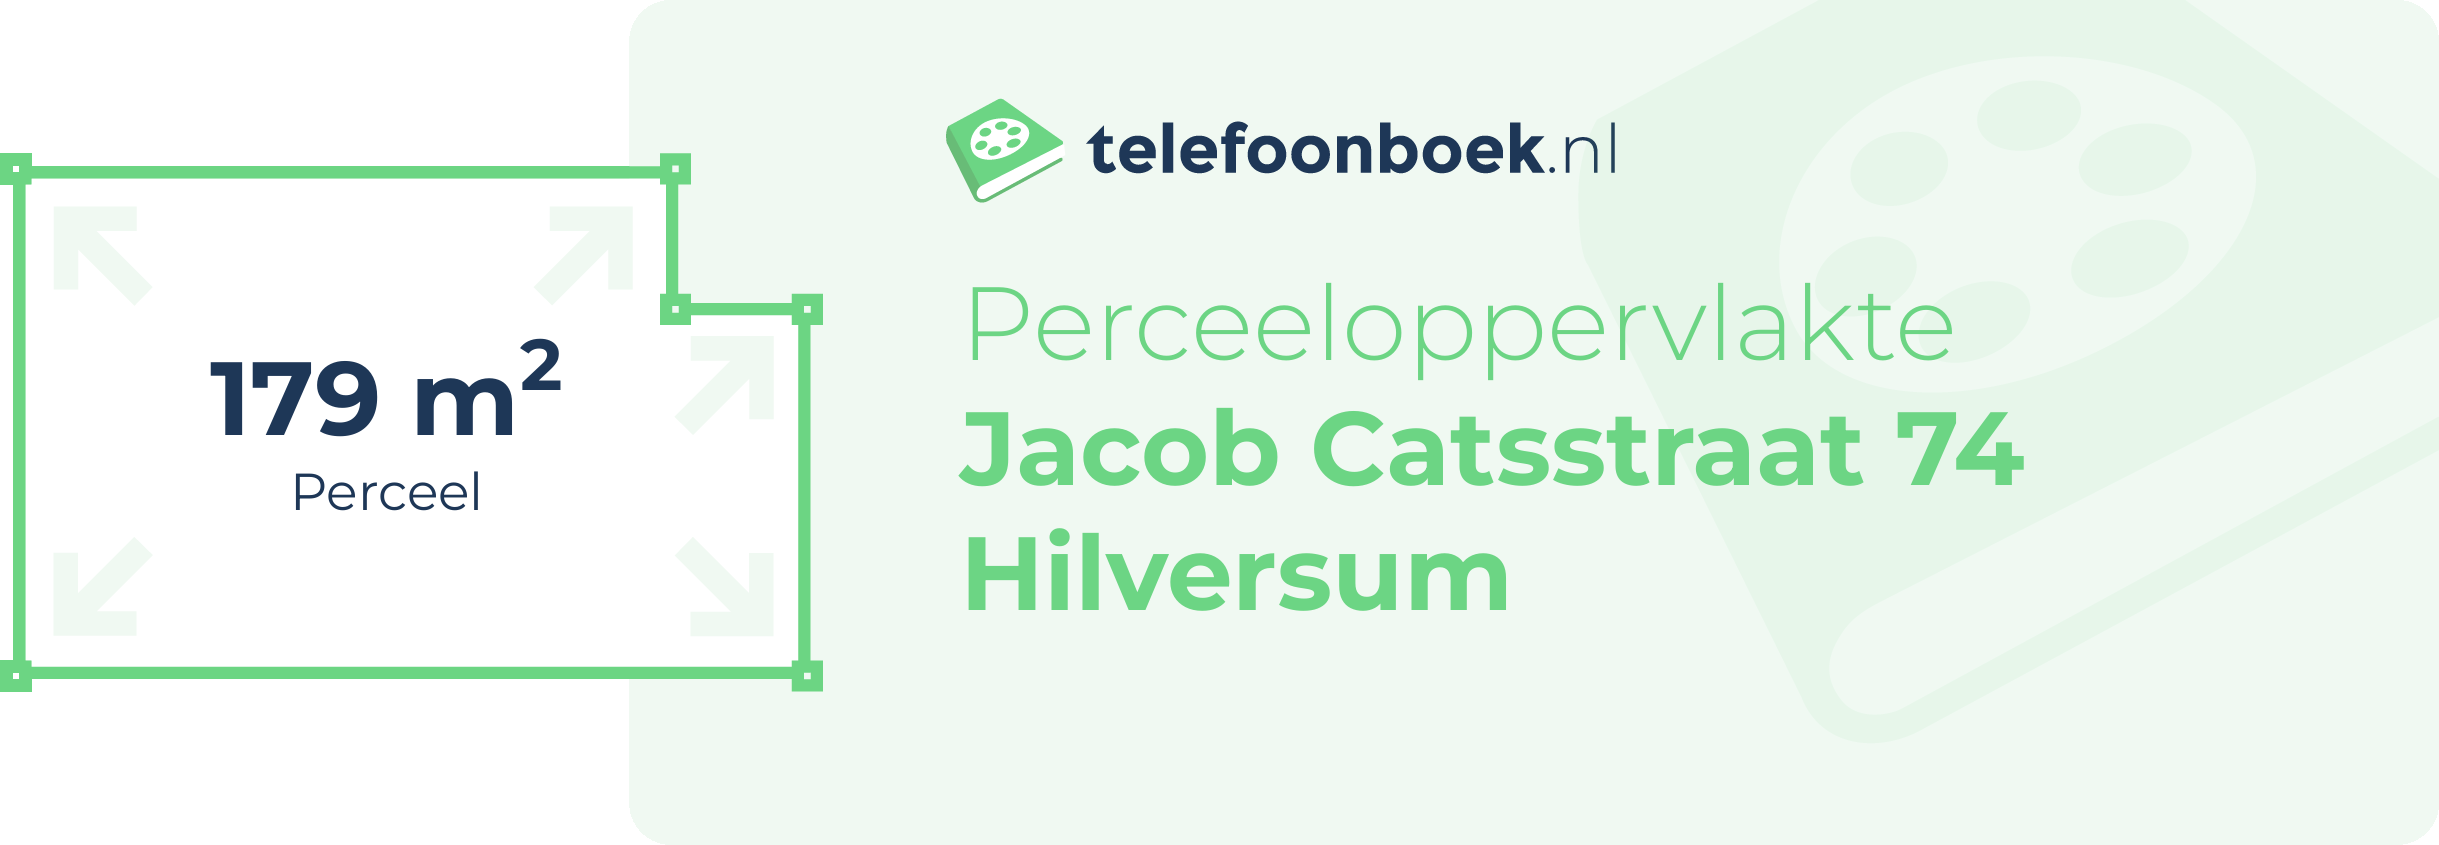 Perceeloppervlakte Jacob Catsstraat 74 Hilversum